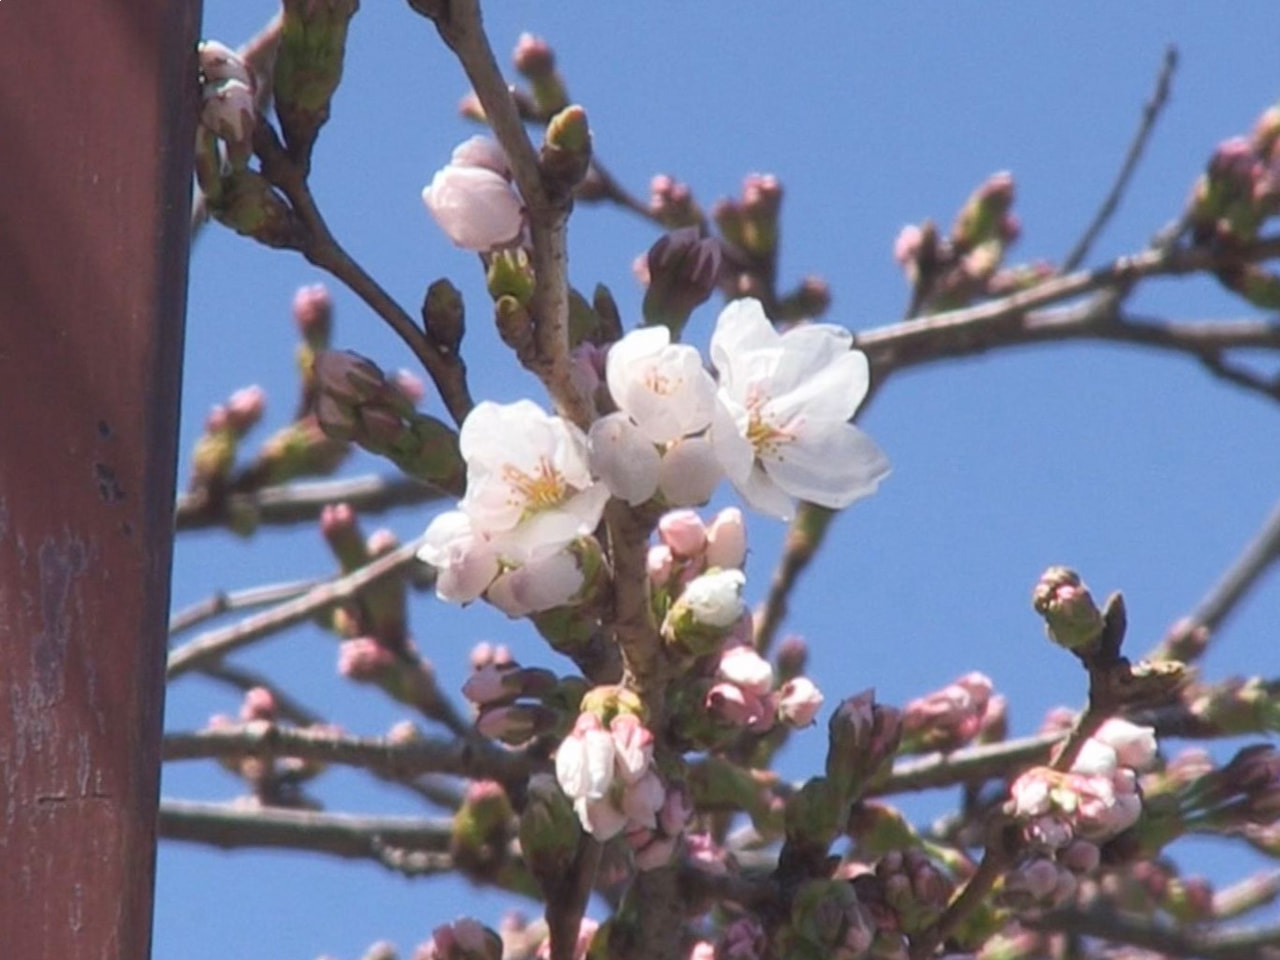 高山市で、市が基準木としている中橋のソメイヨシノが開花しました。 開花は去年より...